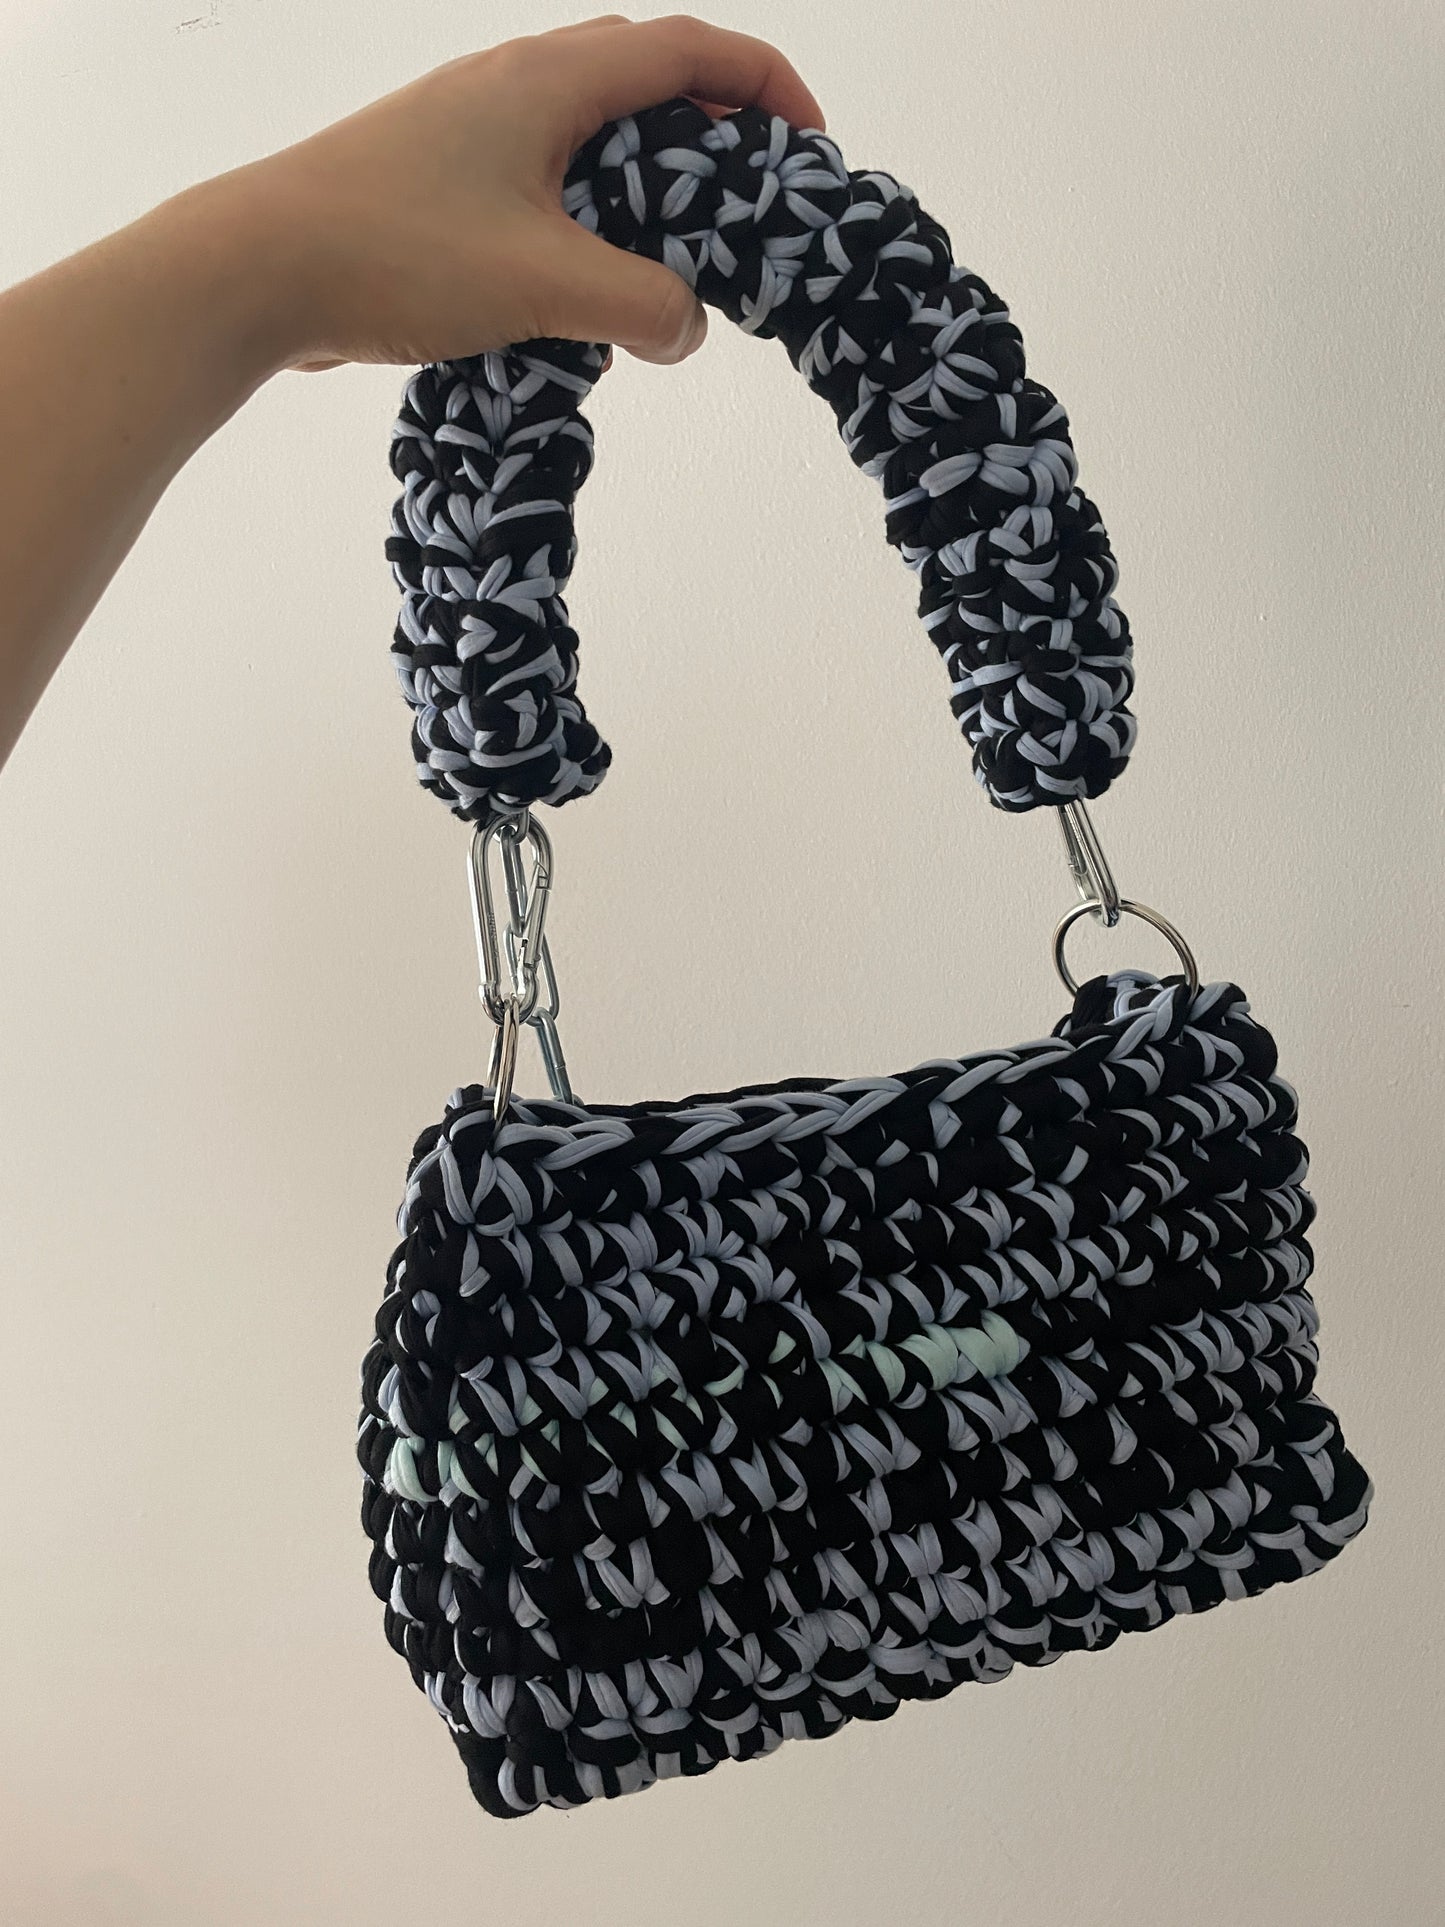 Medium Black and Light Blue Crochet Bag - Medium Crohini JOE Bag - Handmade